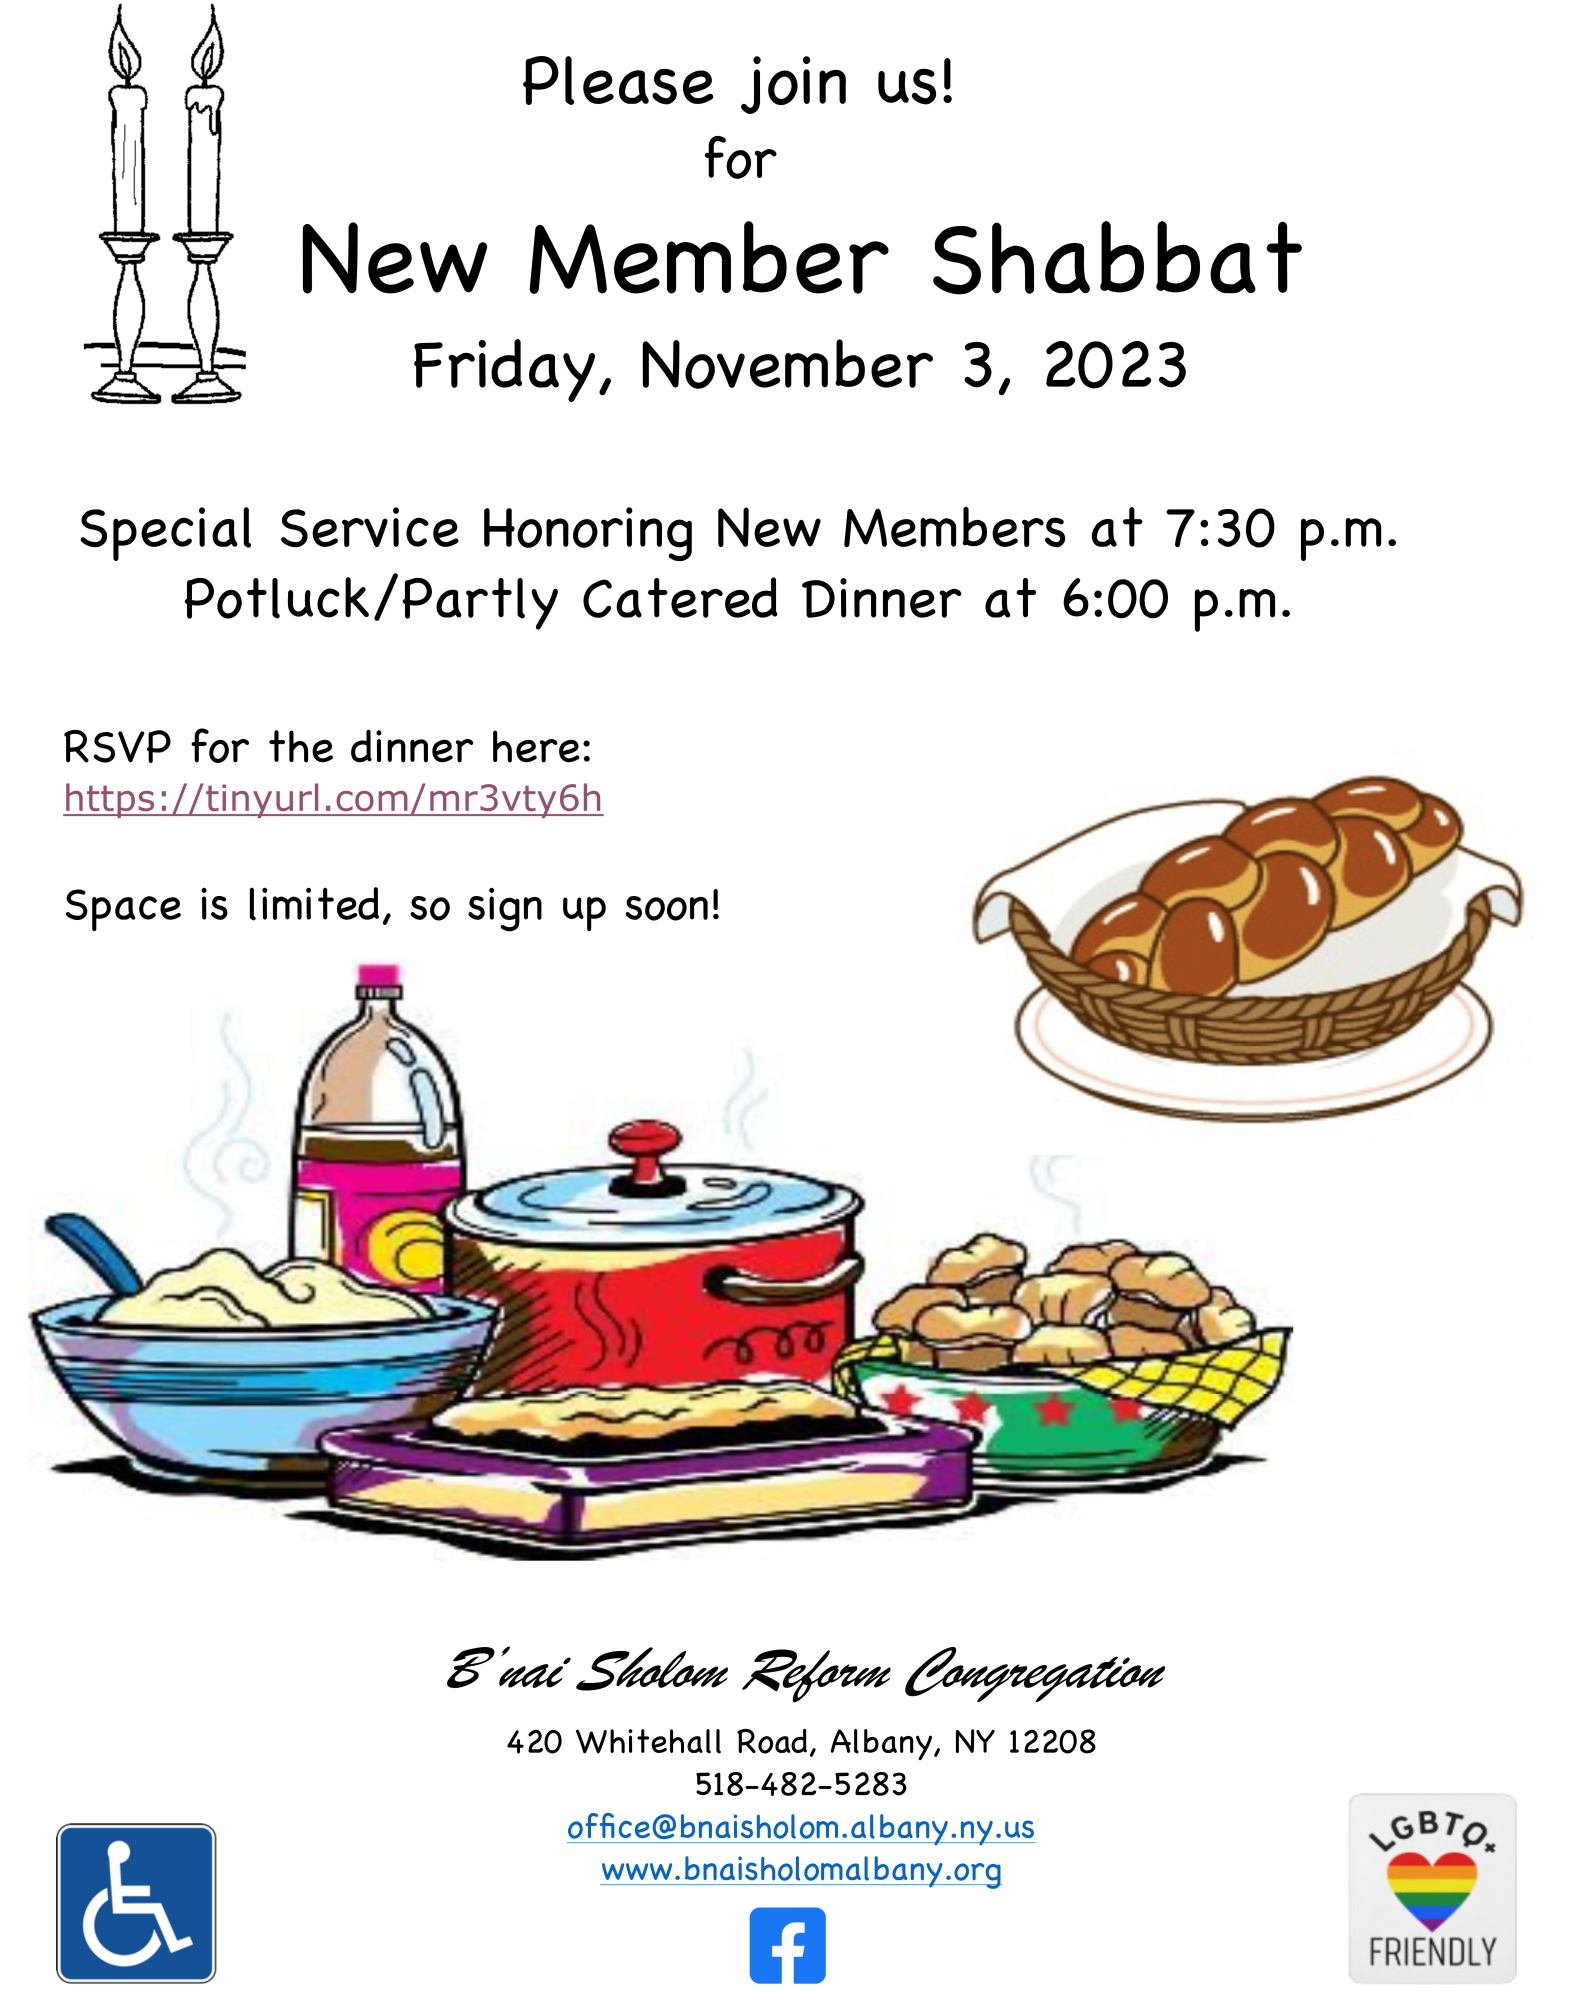 New member dinner/service flyer